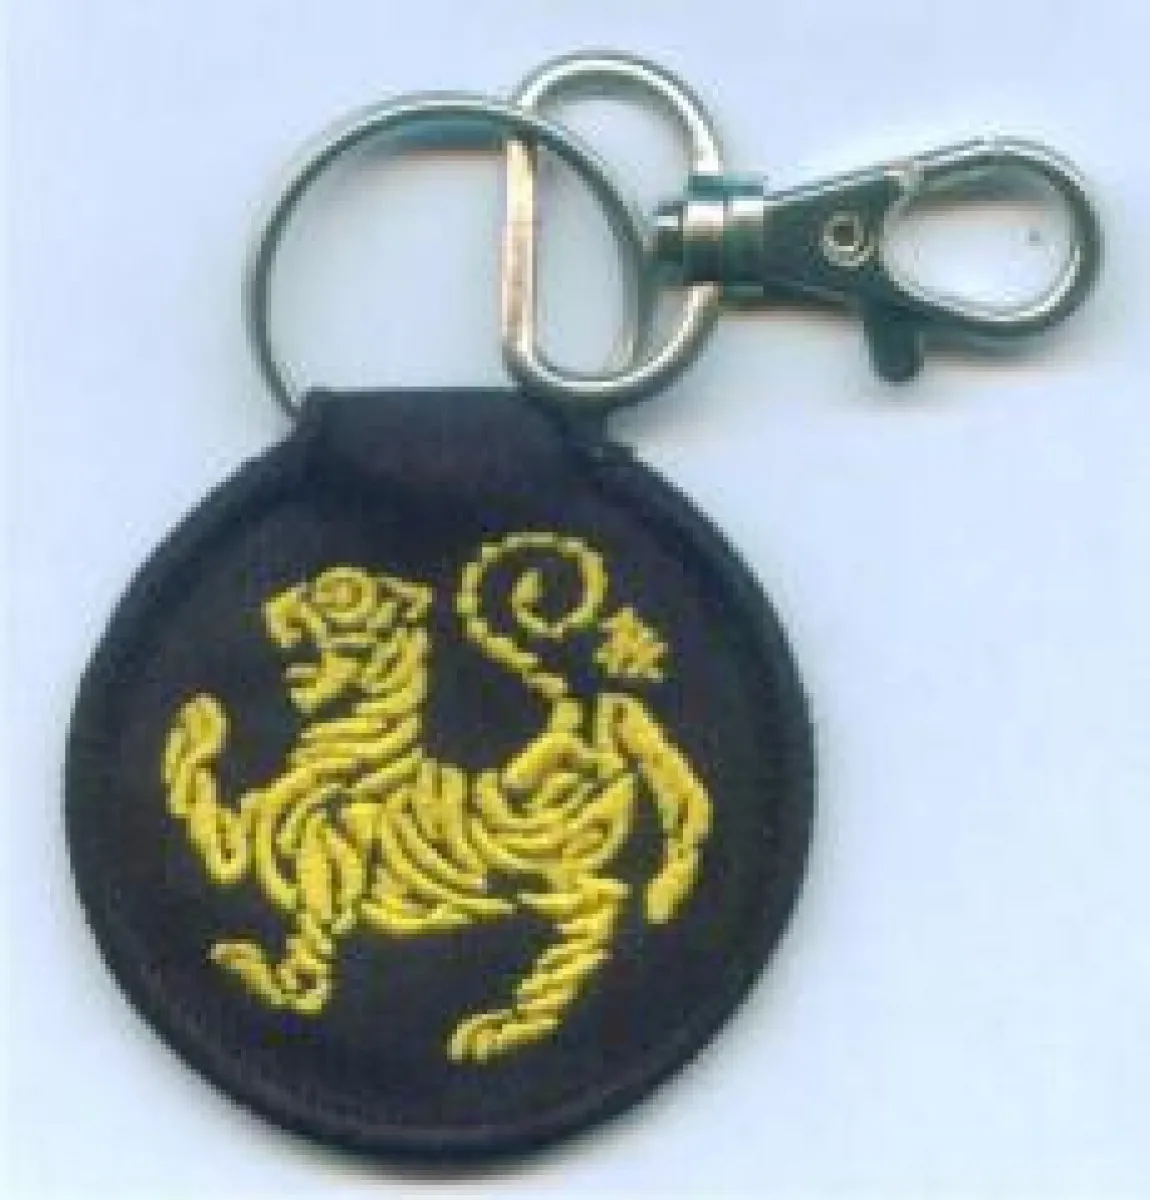 Shotokan embroidered key ring